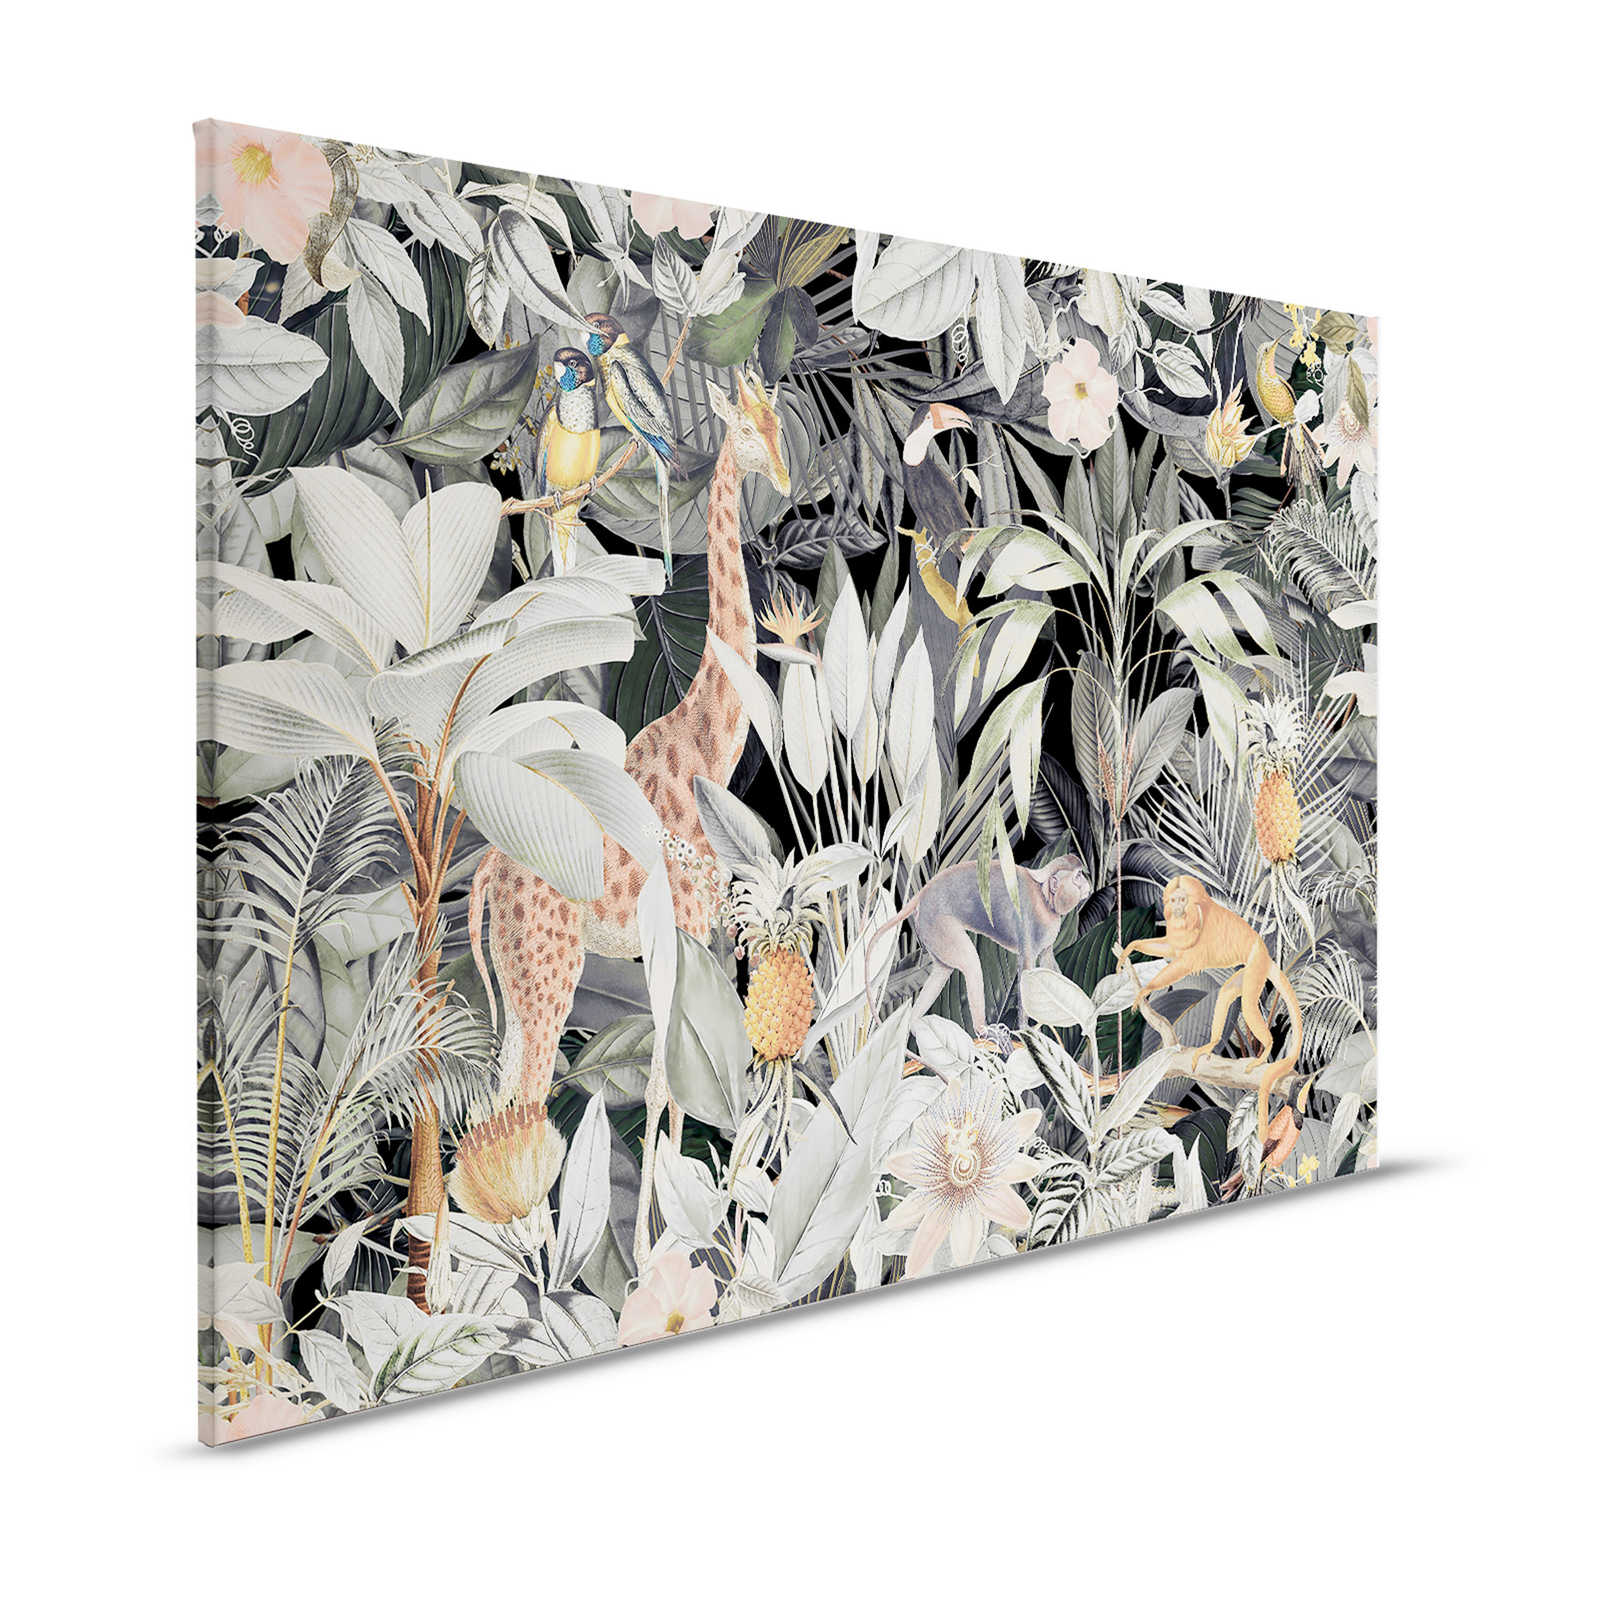 Pintura sobre lienzo de animales Jirafa y monos Motivo selva salvaje - 1,20 m x 0,80 m
